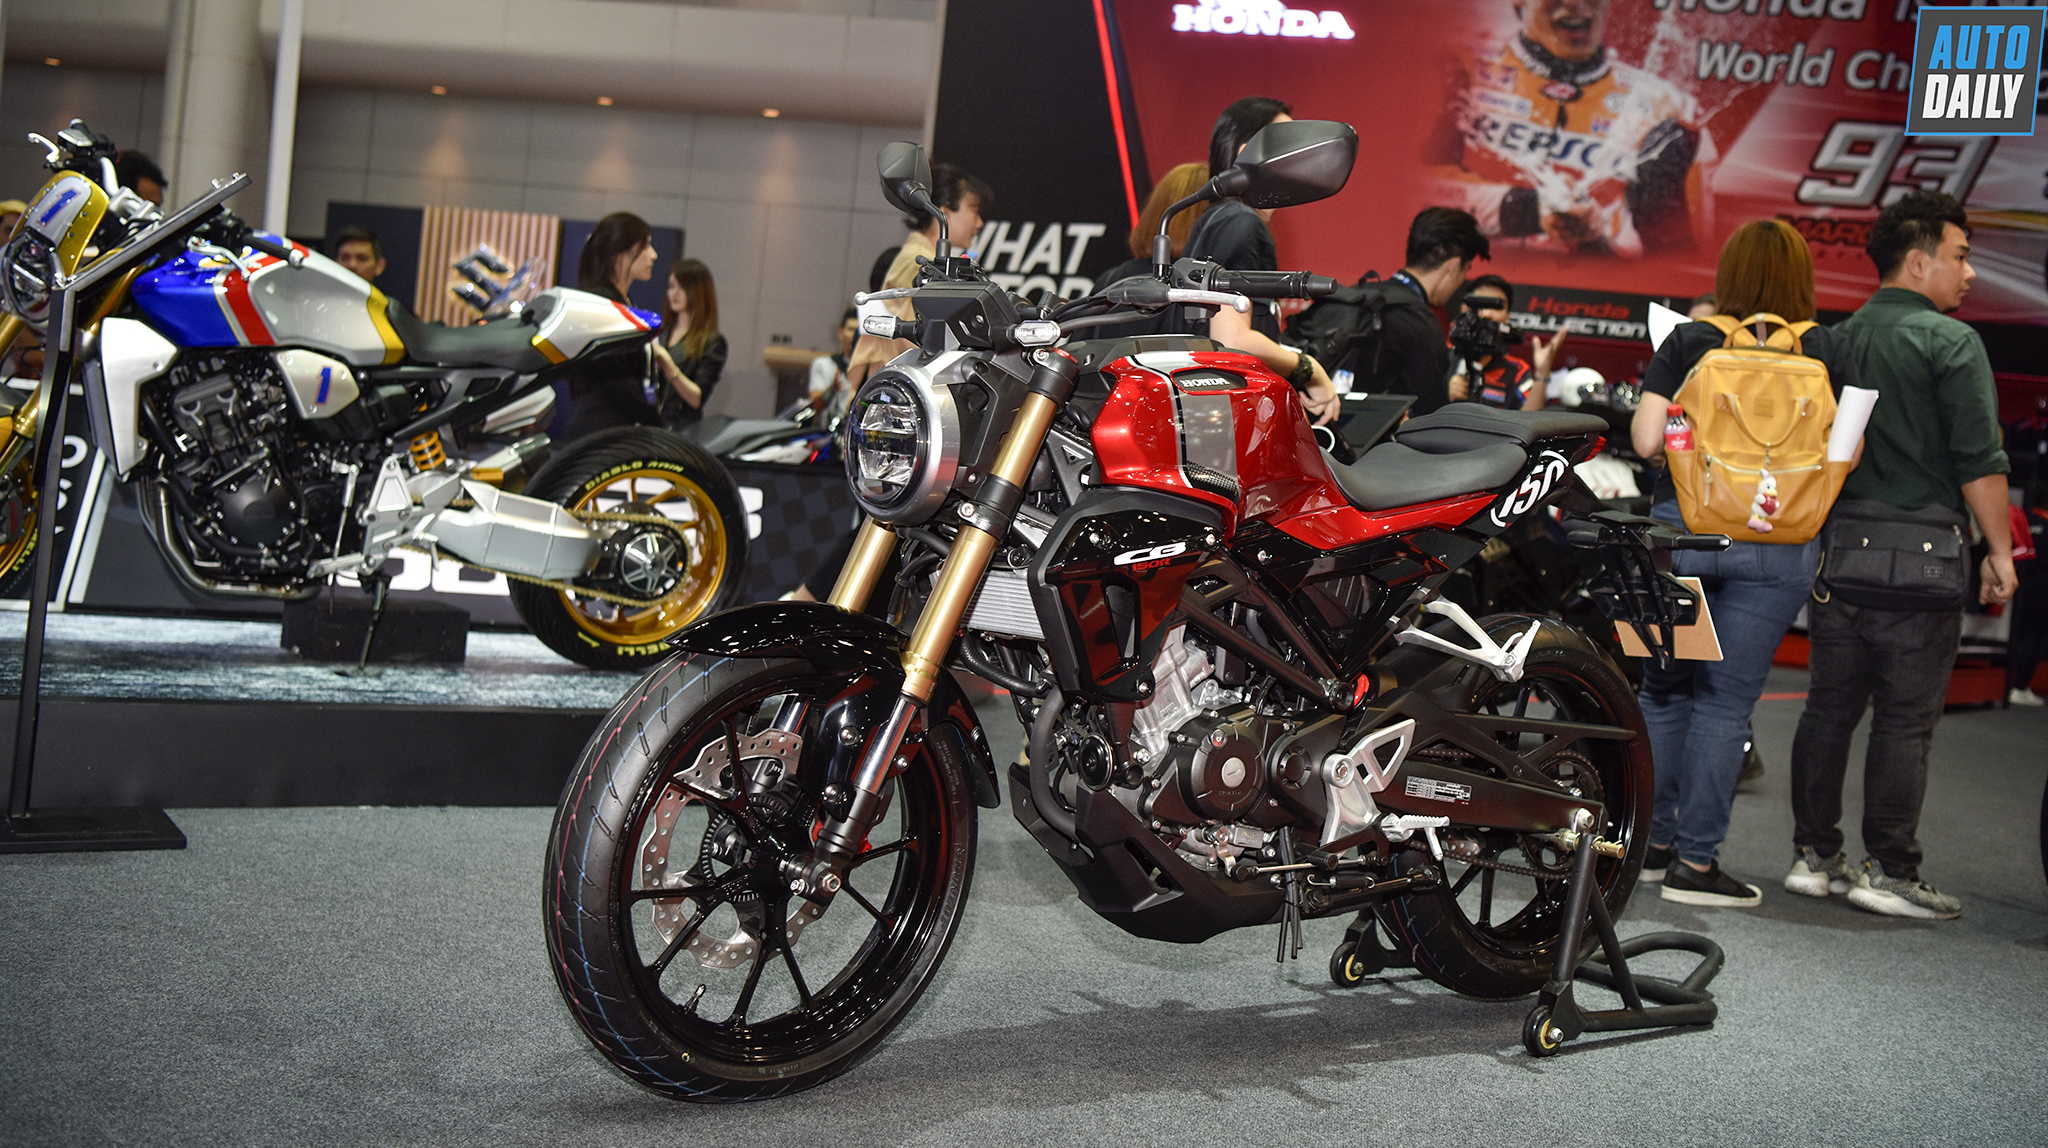 Soi kỹ Honda CB150R 2019 giá hơn 70 triệu tại Thái Lan, rẻ hơn nhiều tại Việt Nam